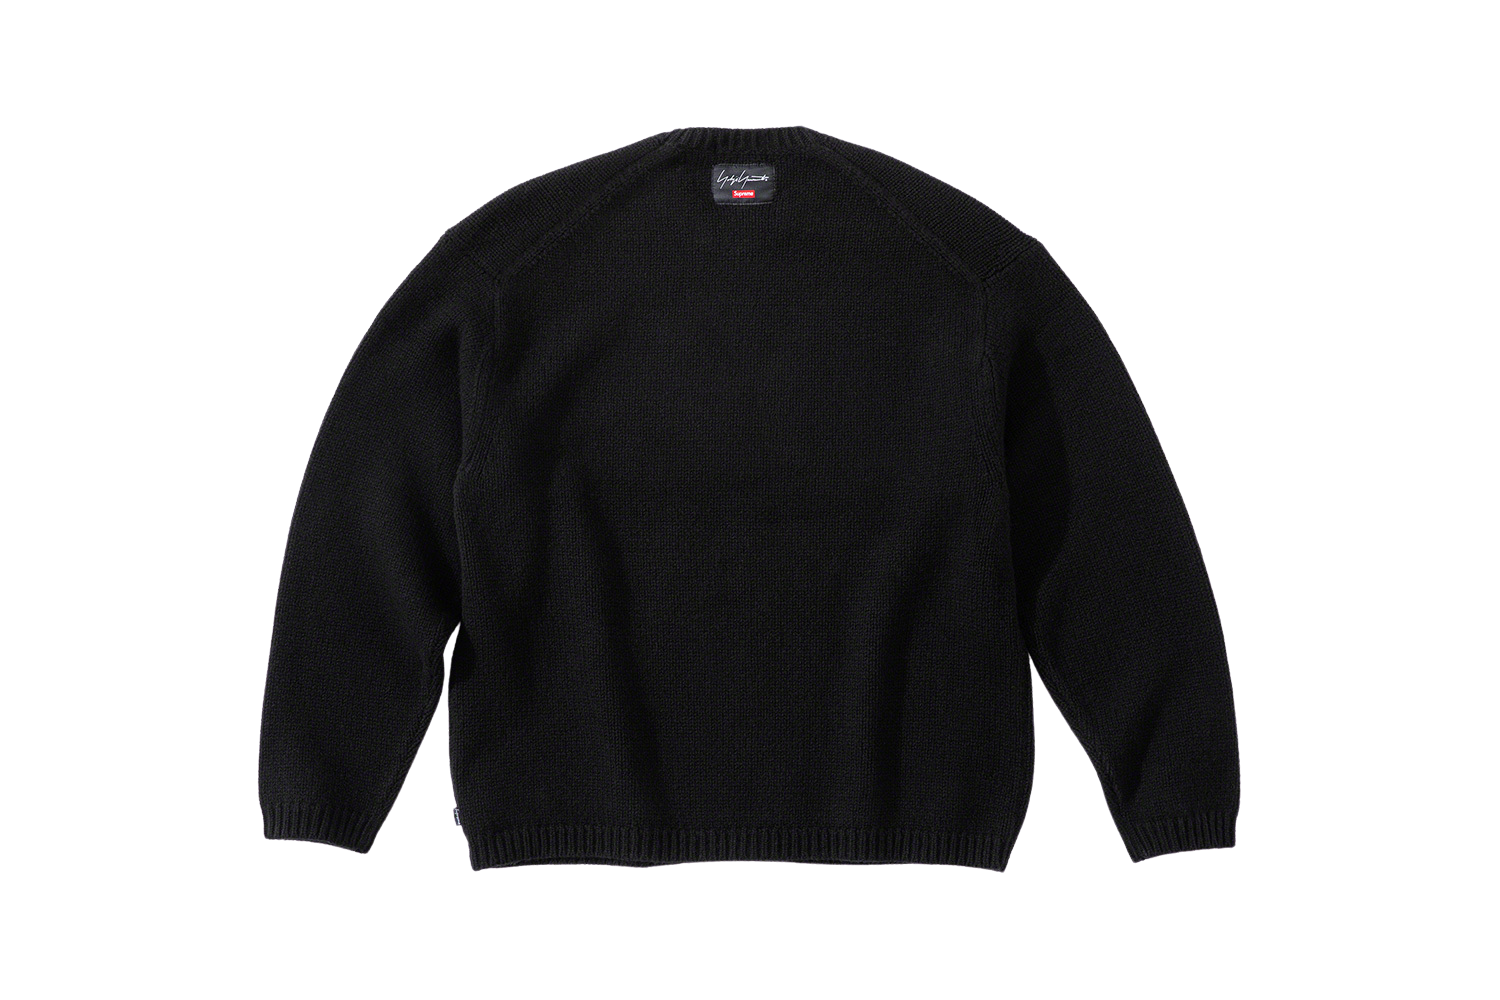 Yohji Yamamoto Sweater - fall winter 2020 - Supreme